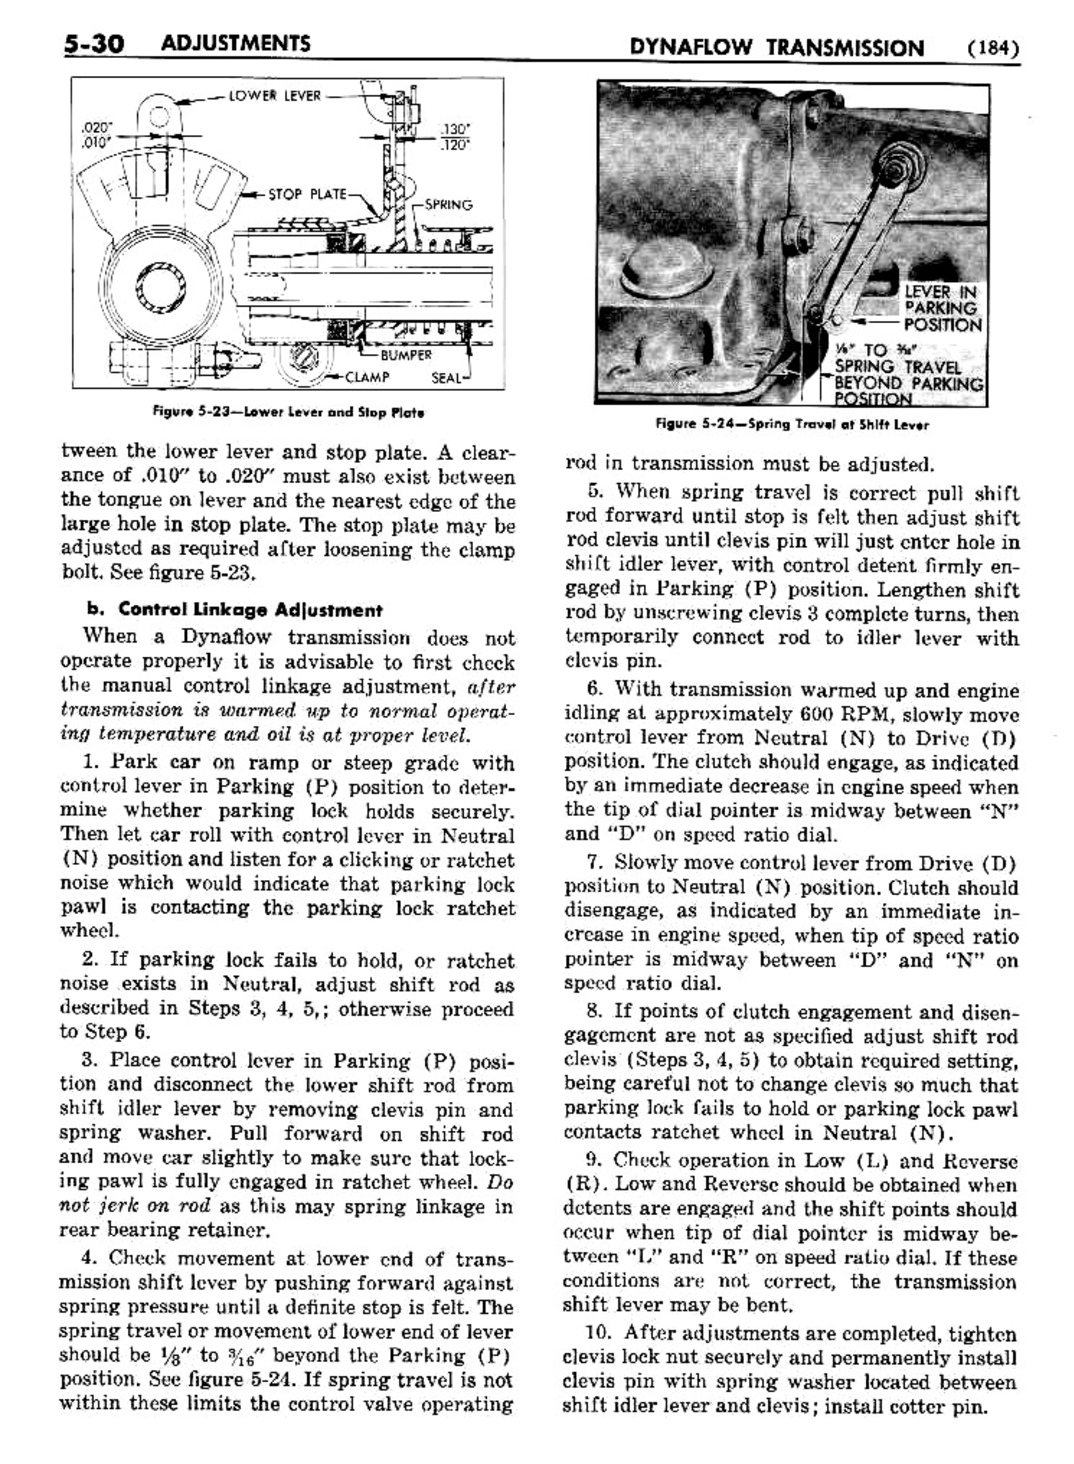 n_06 1954 Buick Shop Manual - Dynaflow-030-030.jpg